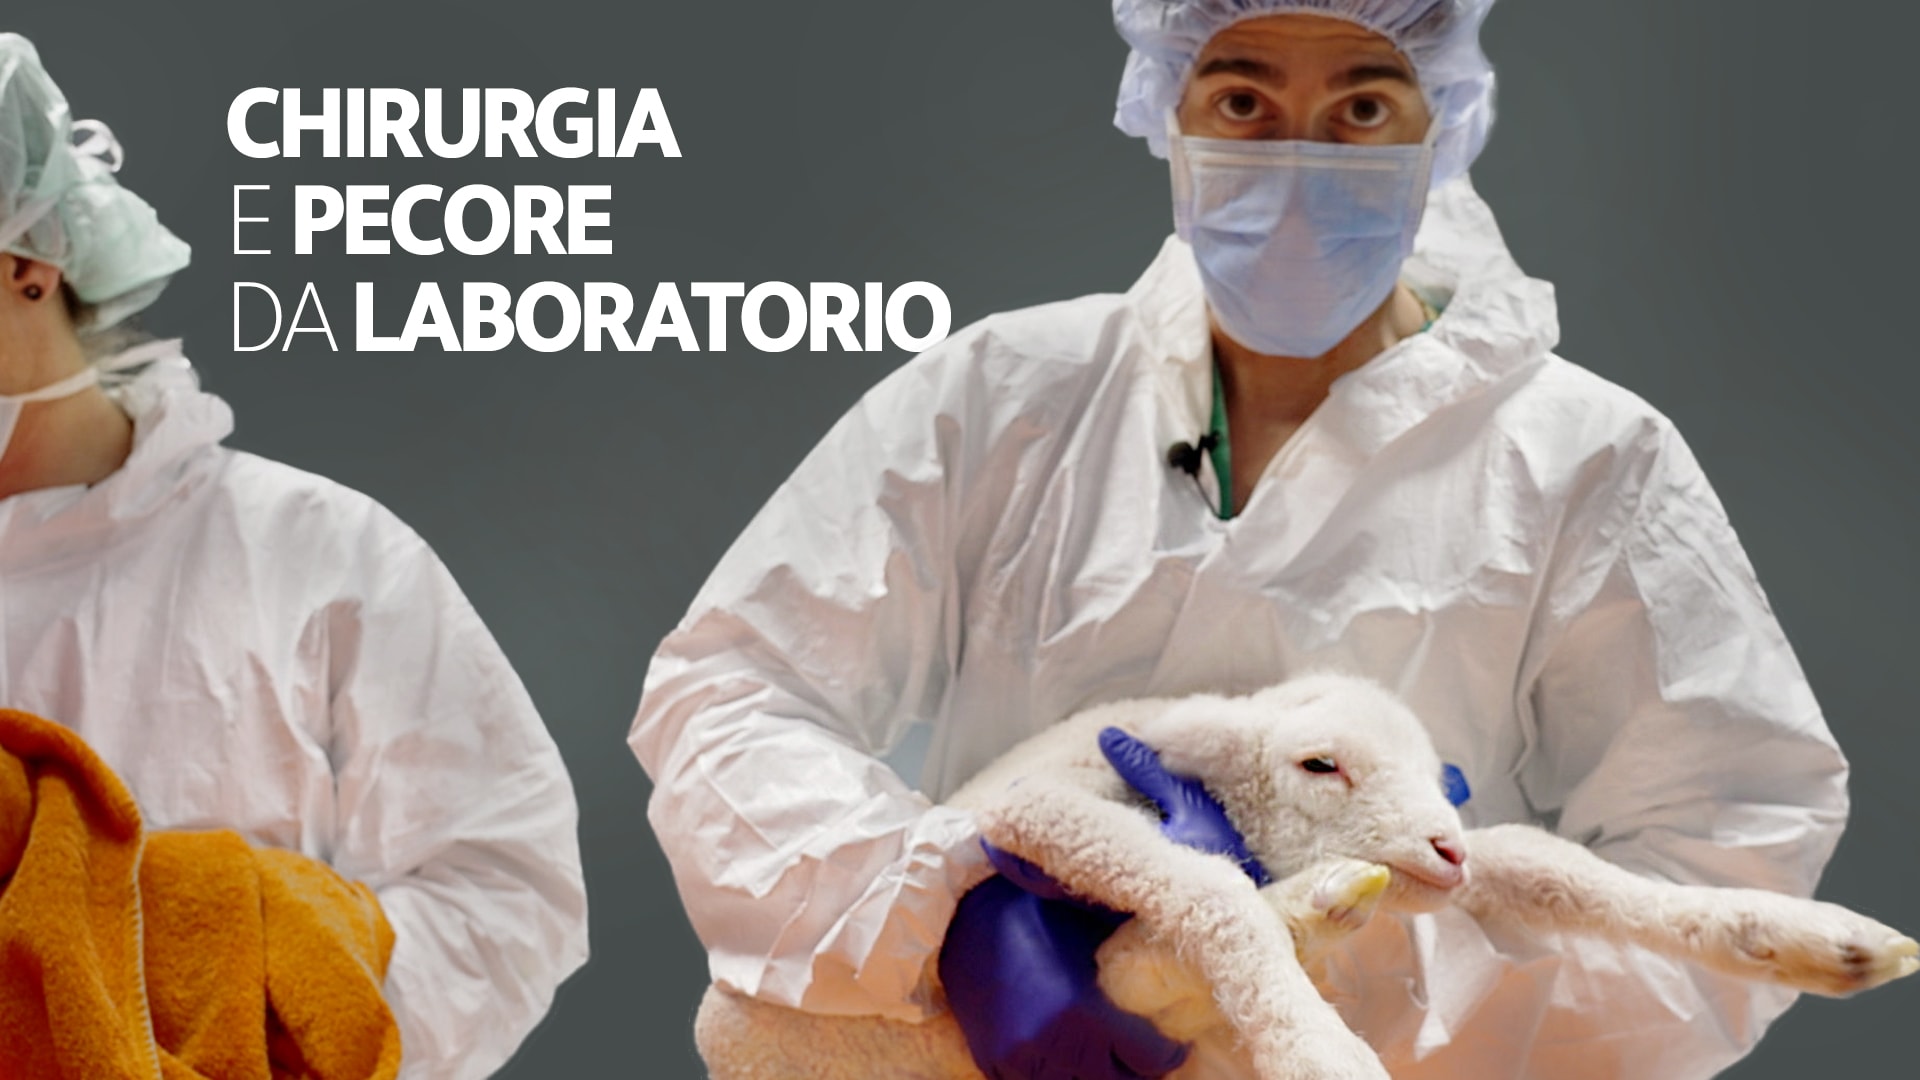 Chirurgia e pecore da laboratorio